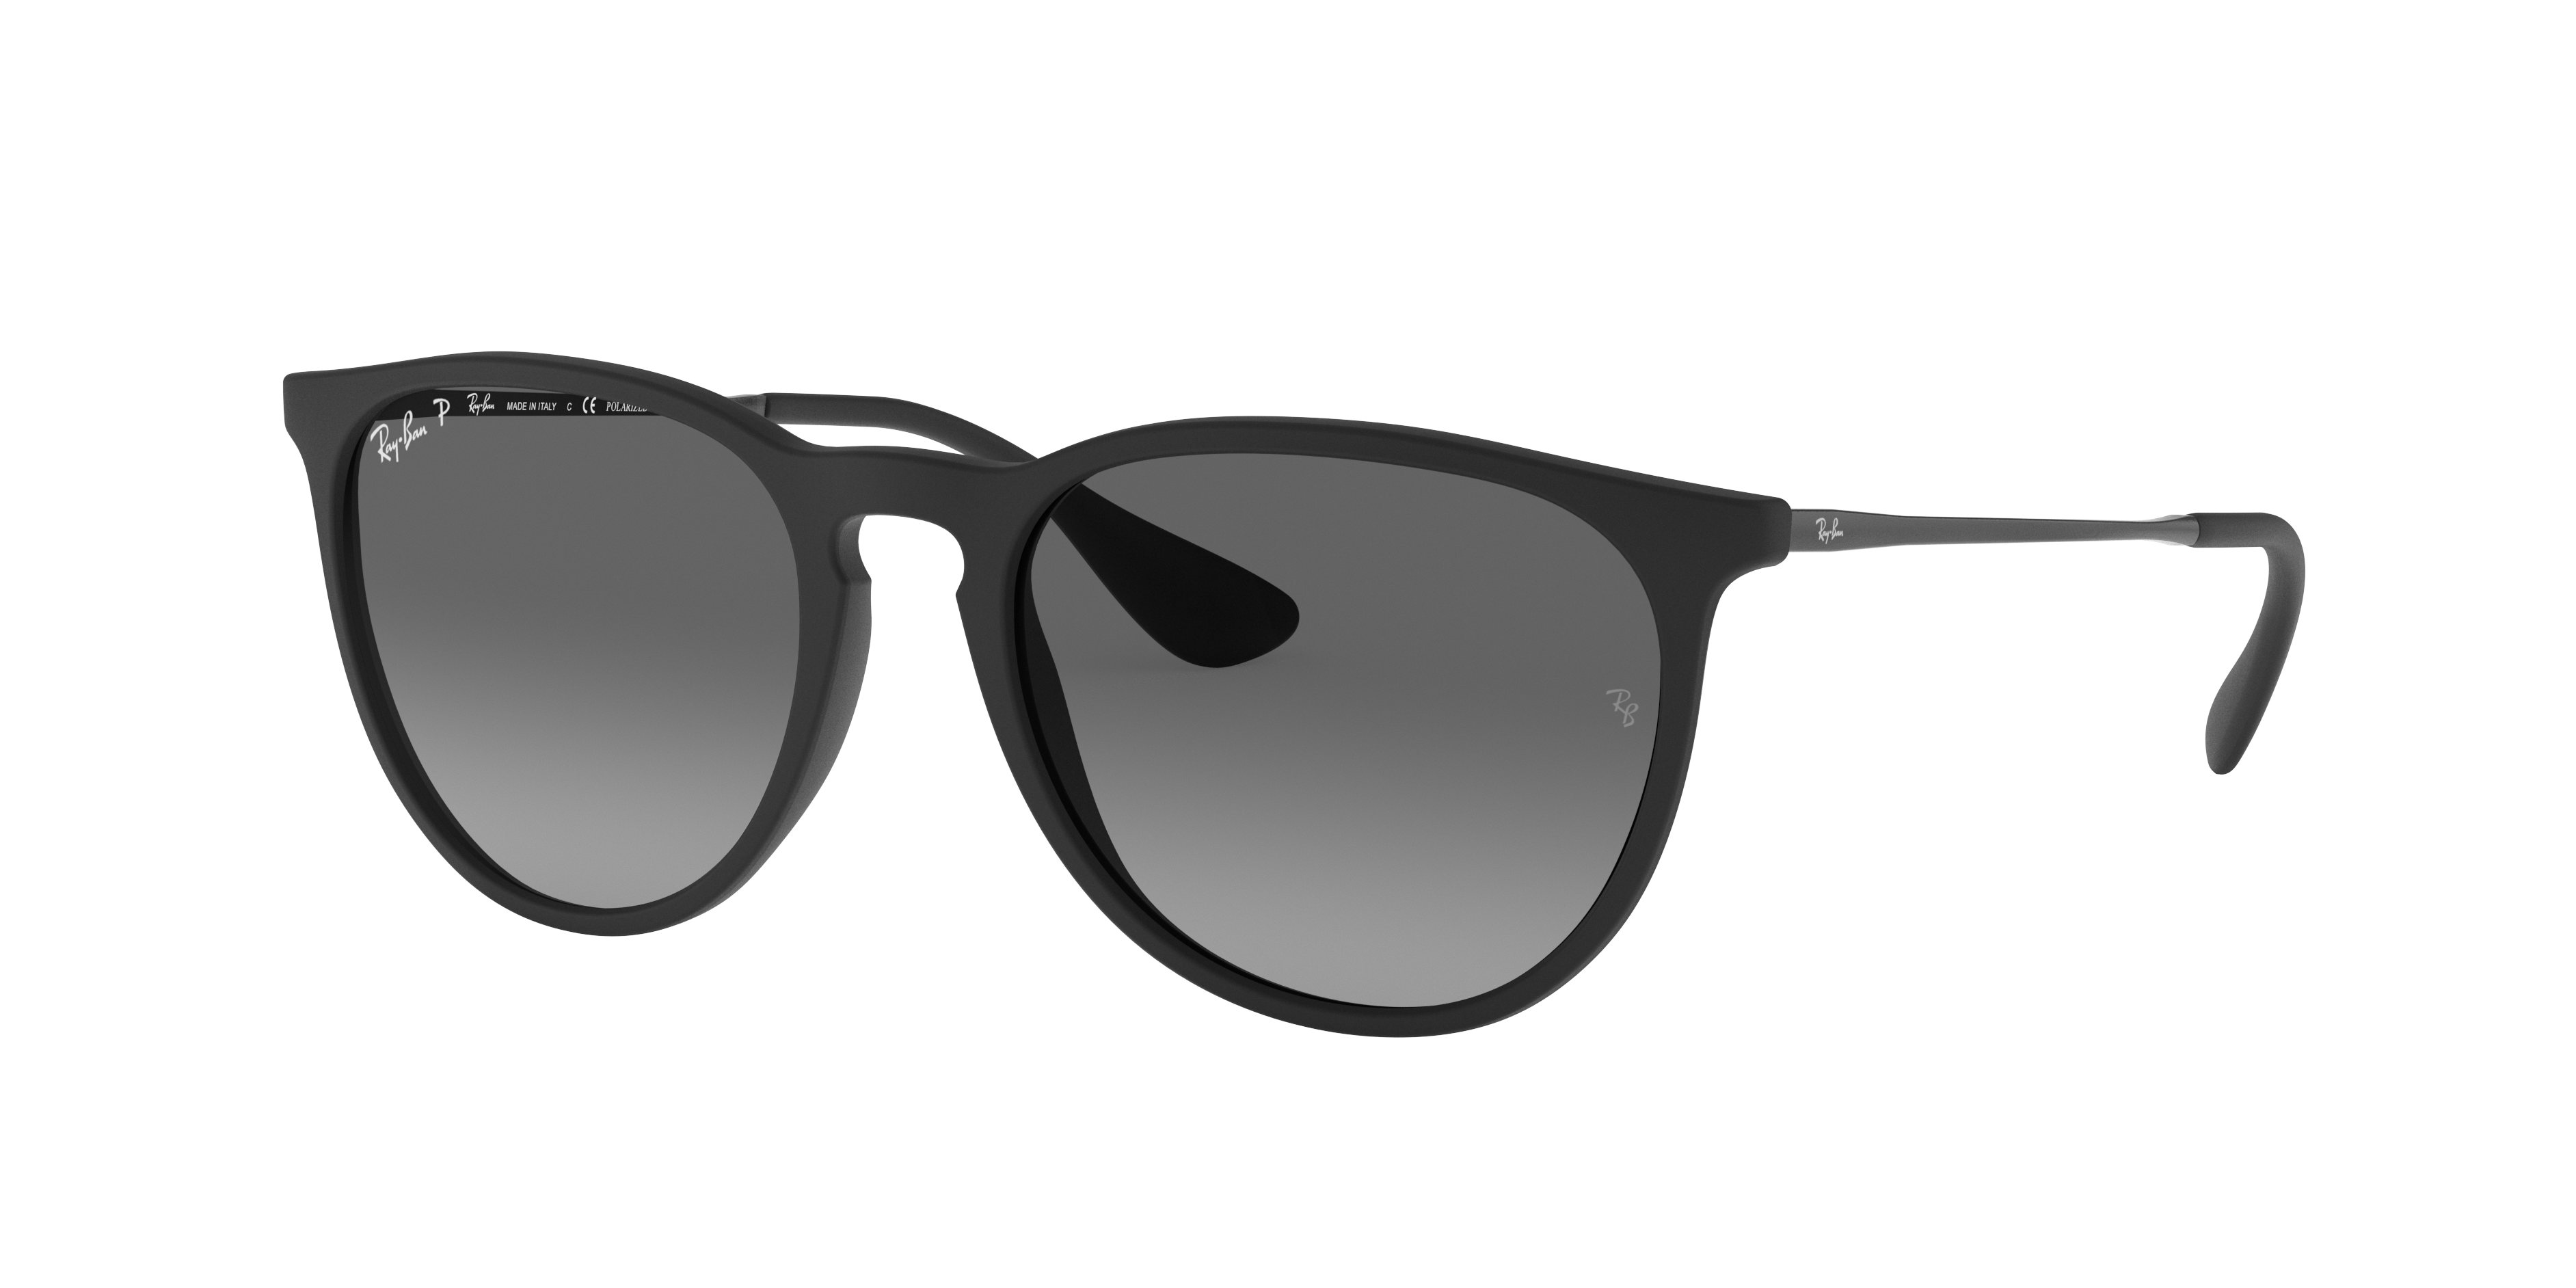 polarized erika sunglasses